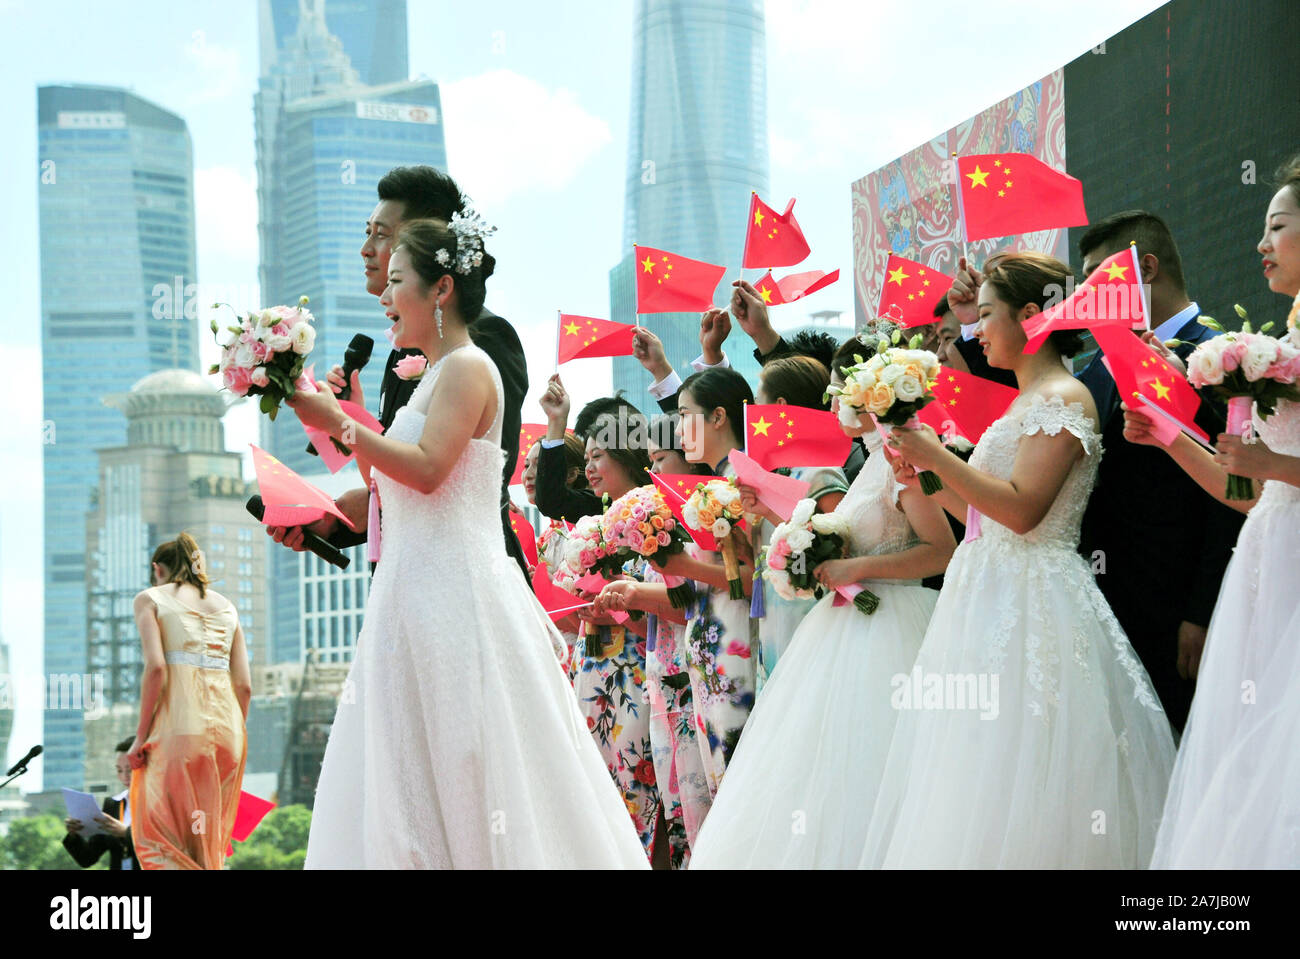 Gastgeber für die Gruppe Hochzeit, front, sprechen durch den Fluss Huangpu in Shanghai, China, 19. September 2019. 15 Paare statt Gruppe Hochzeiten durch den Huangpu Stockfoto